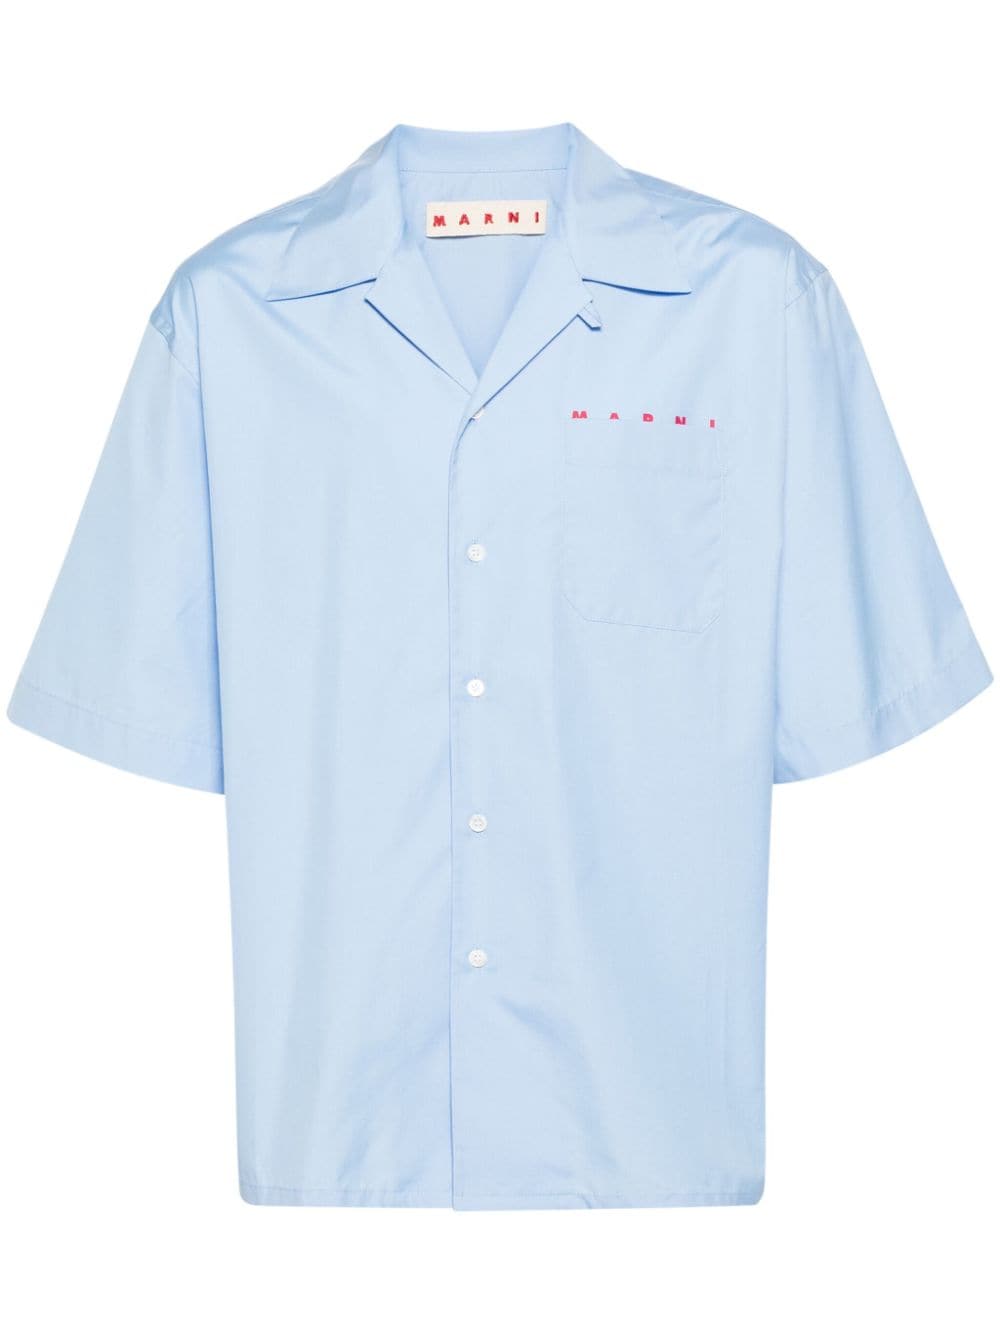 Marni Logo-print Poplin Shirt In Blue